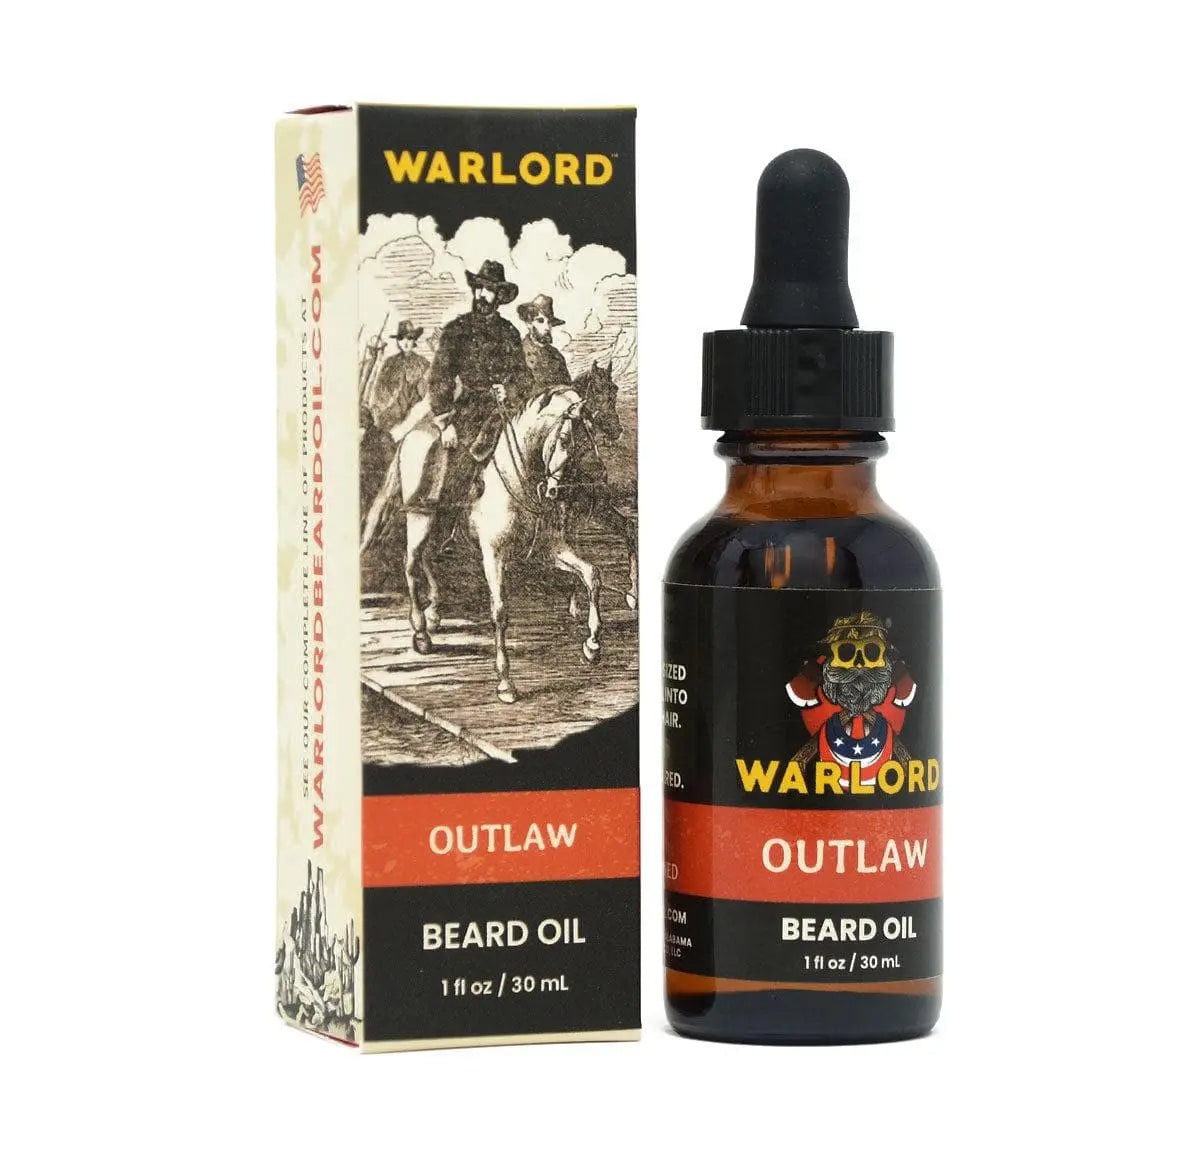 Warlord Outlaw Beard Oil|Beard Oil